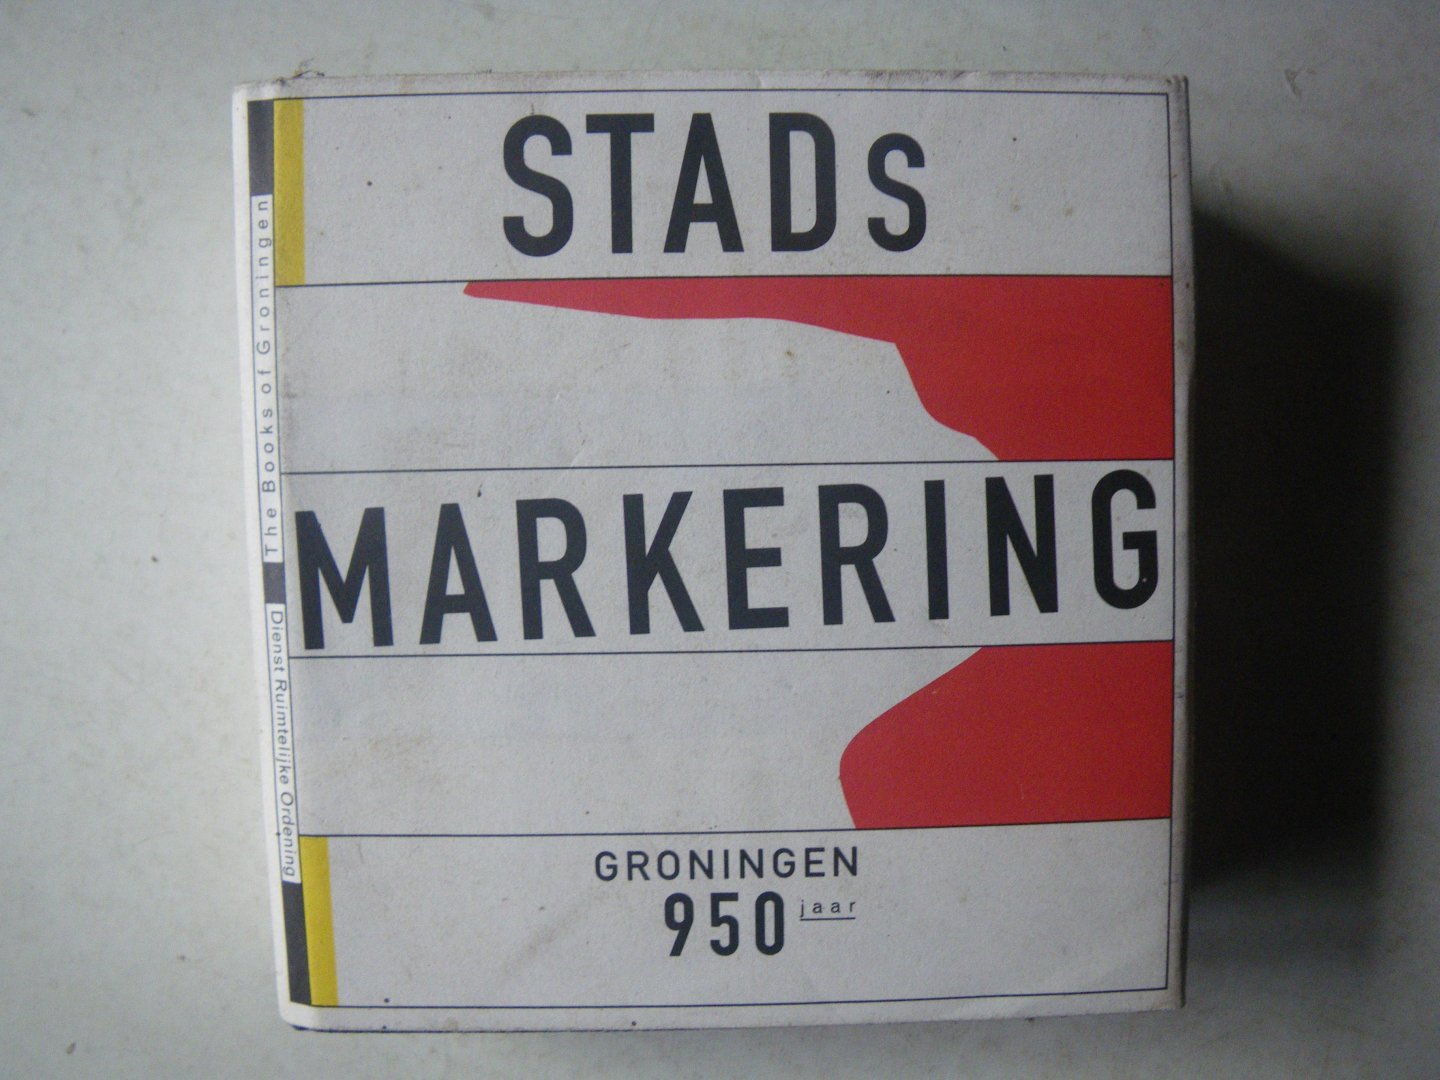 HEFTING, Paul + WINKEL, Camiel van ( red.) - Stads markering / Marking the City Boundaries. Groningen 950 jaar